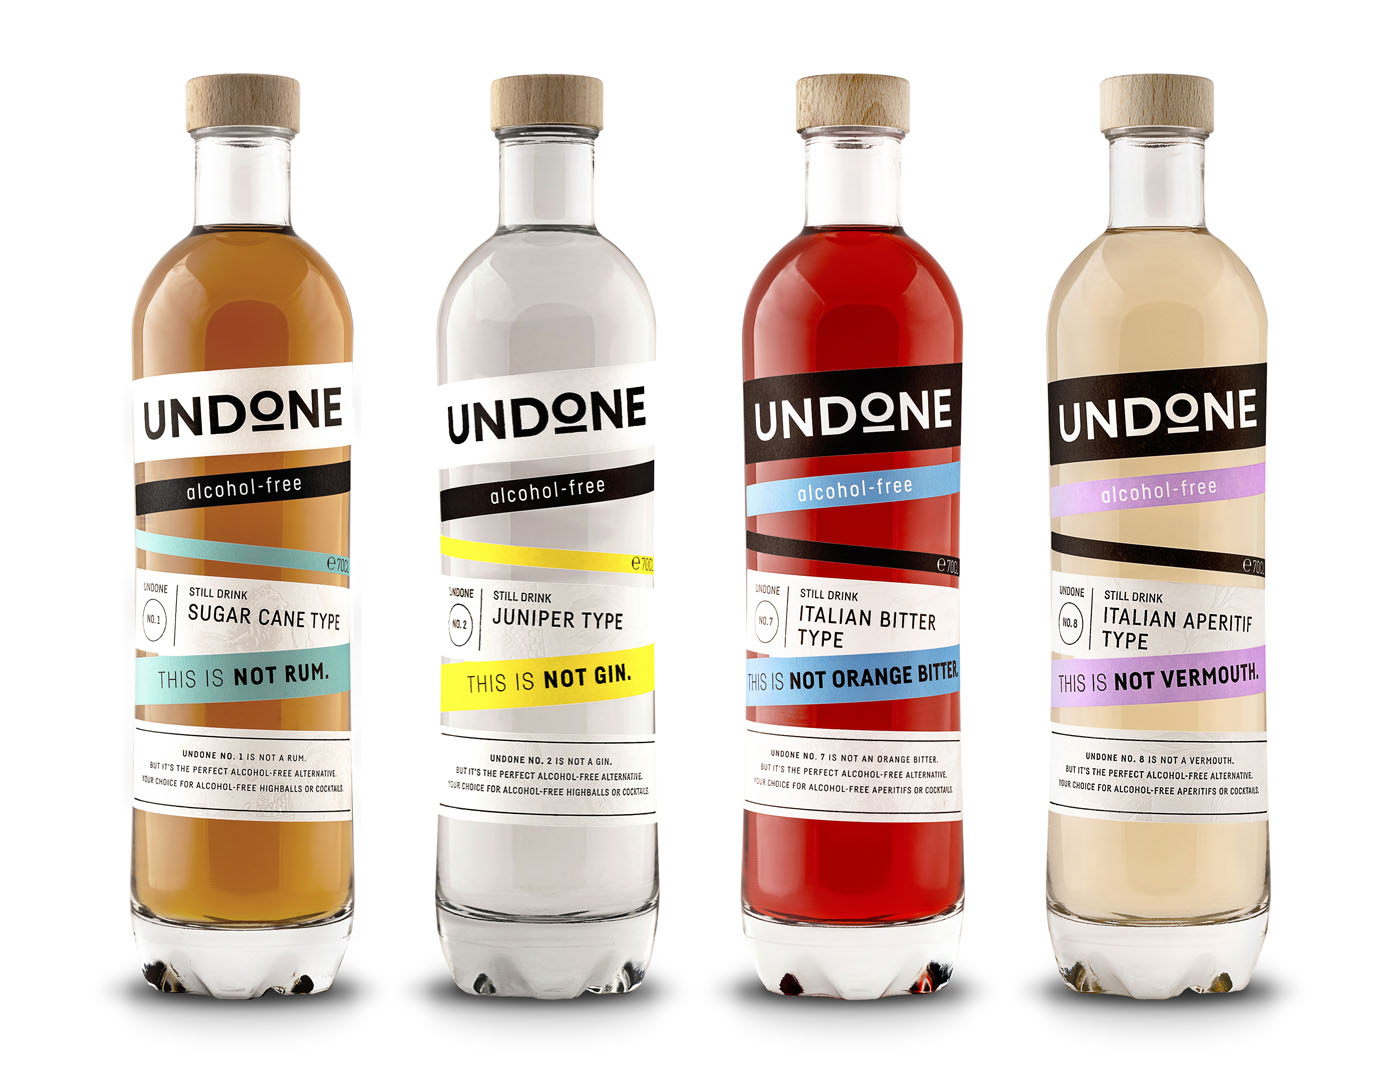 Erste Produktlinie: Undone – startet mit Spirituosen-Alternativen alkoholfreien durch